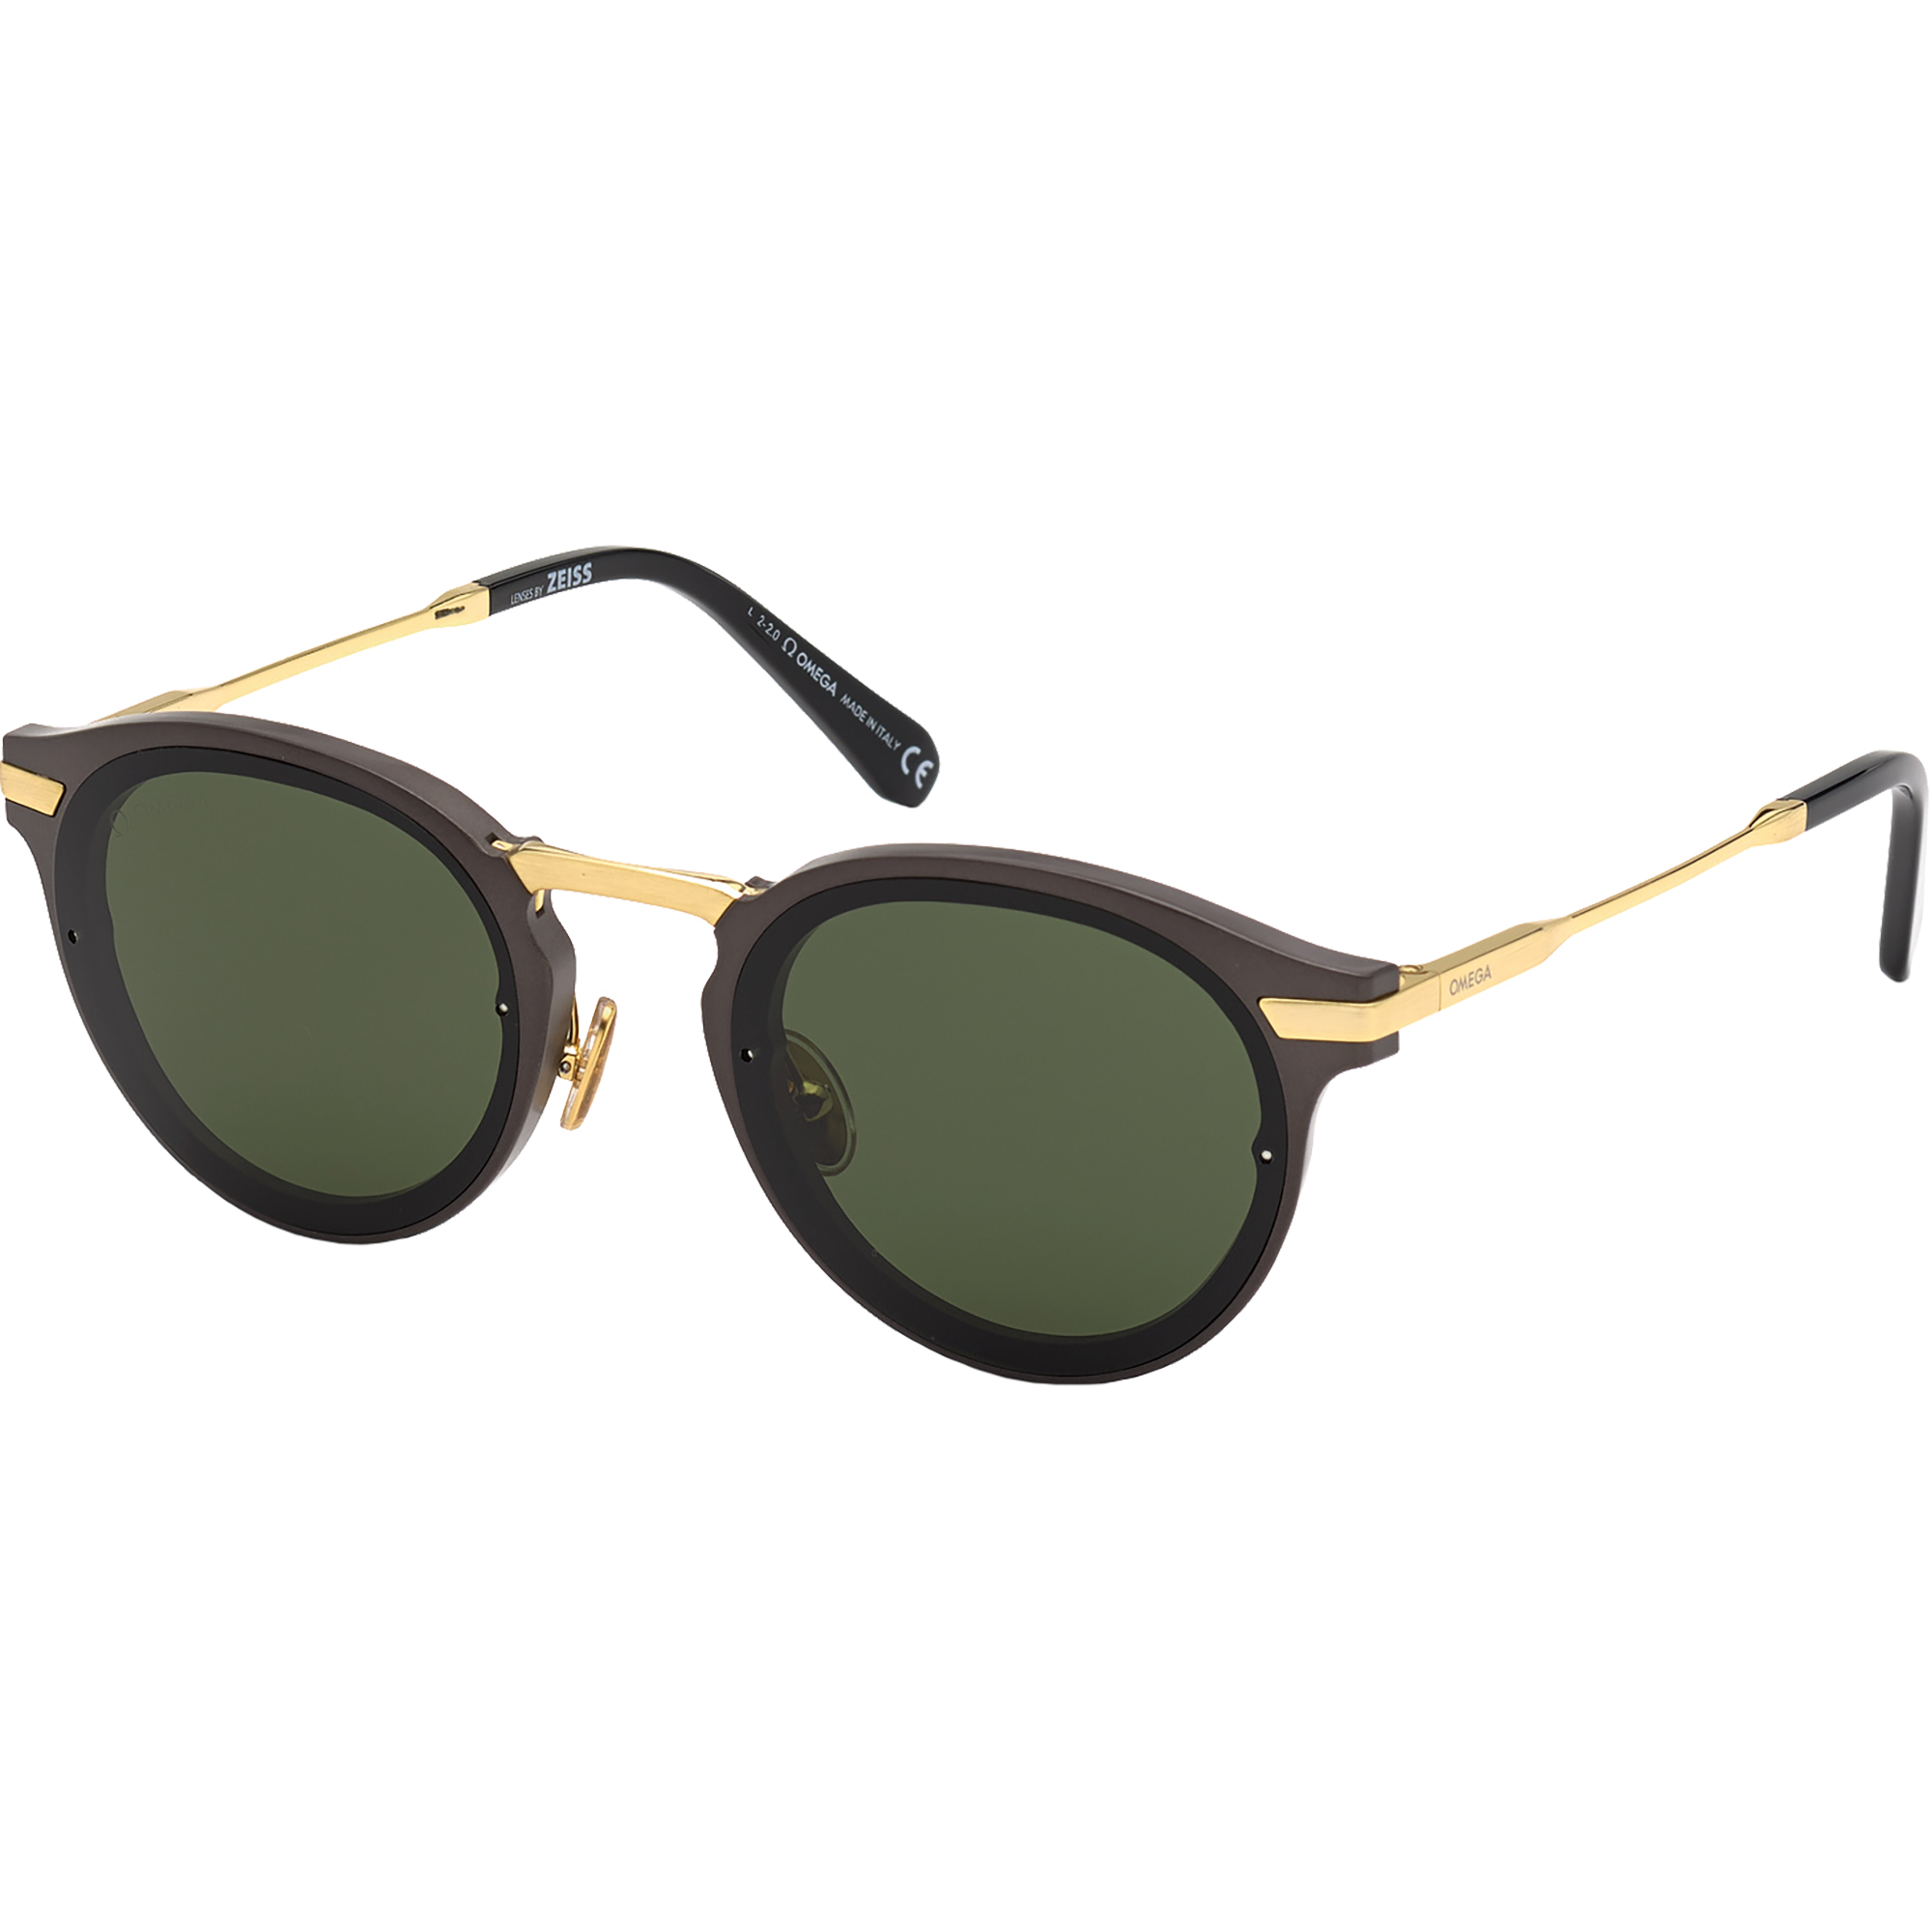 Солнцезащитные очки - Круглая форма, МУЖСКИЕ ОЧКИ - OM0029-H5408N